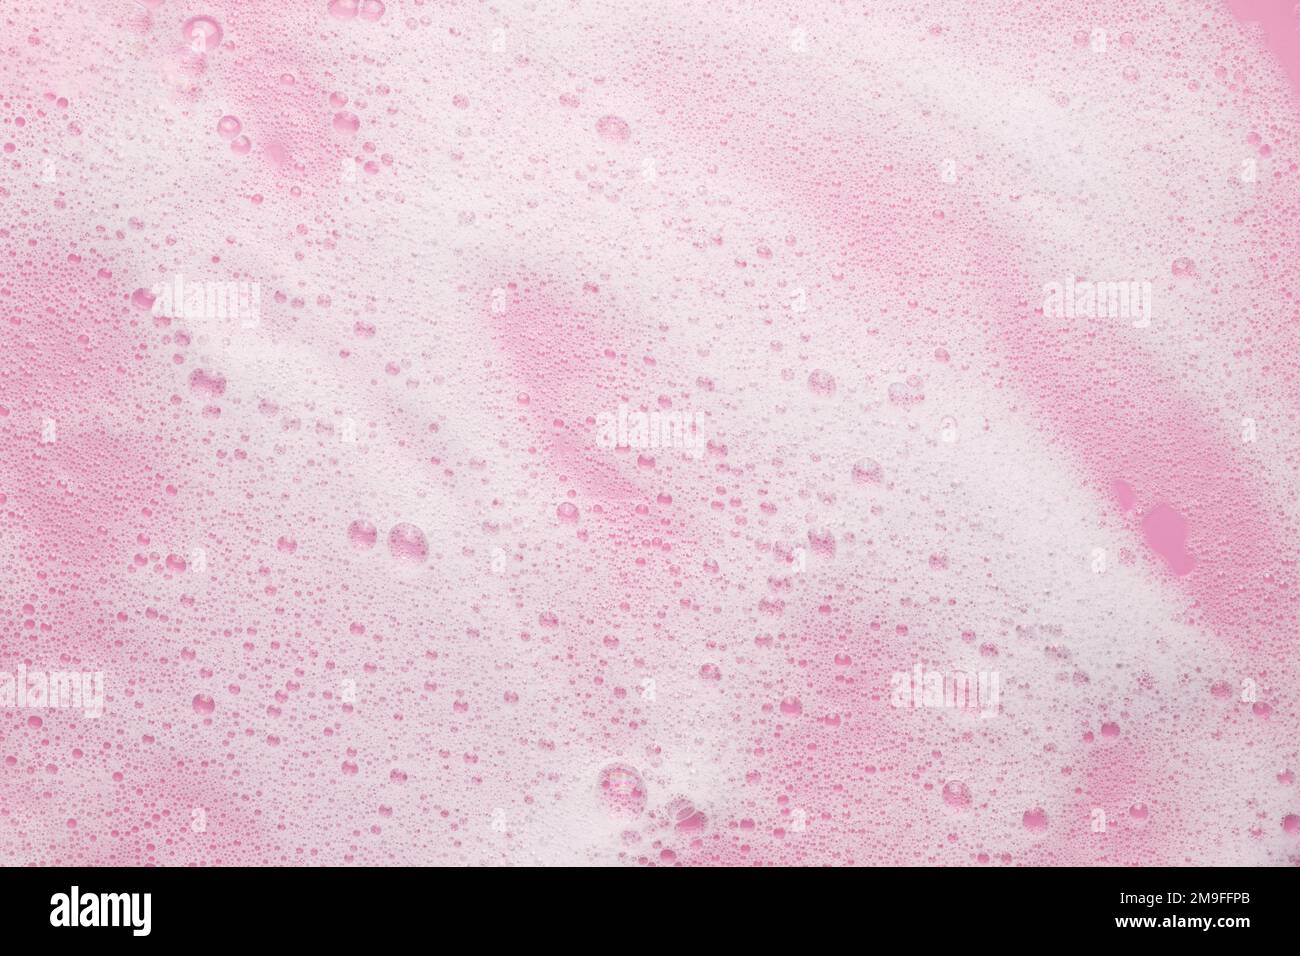 Liquide cosmétique blanc aéré moussant sur fond rose. Mousse de bain, mousse, shampooing. Concept de beauté ou de soins de la peau. Banque D'Images